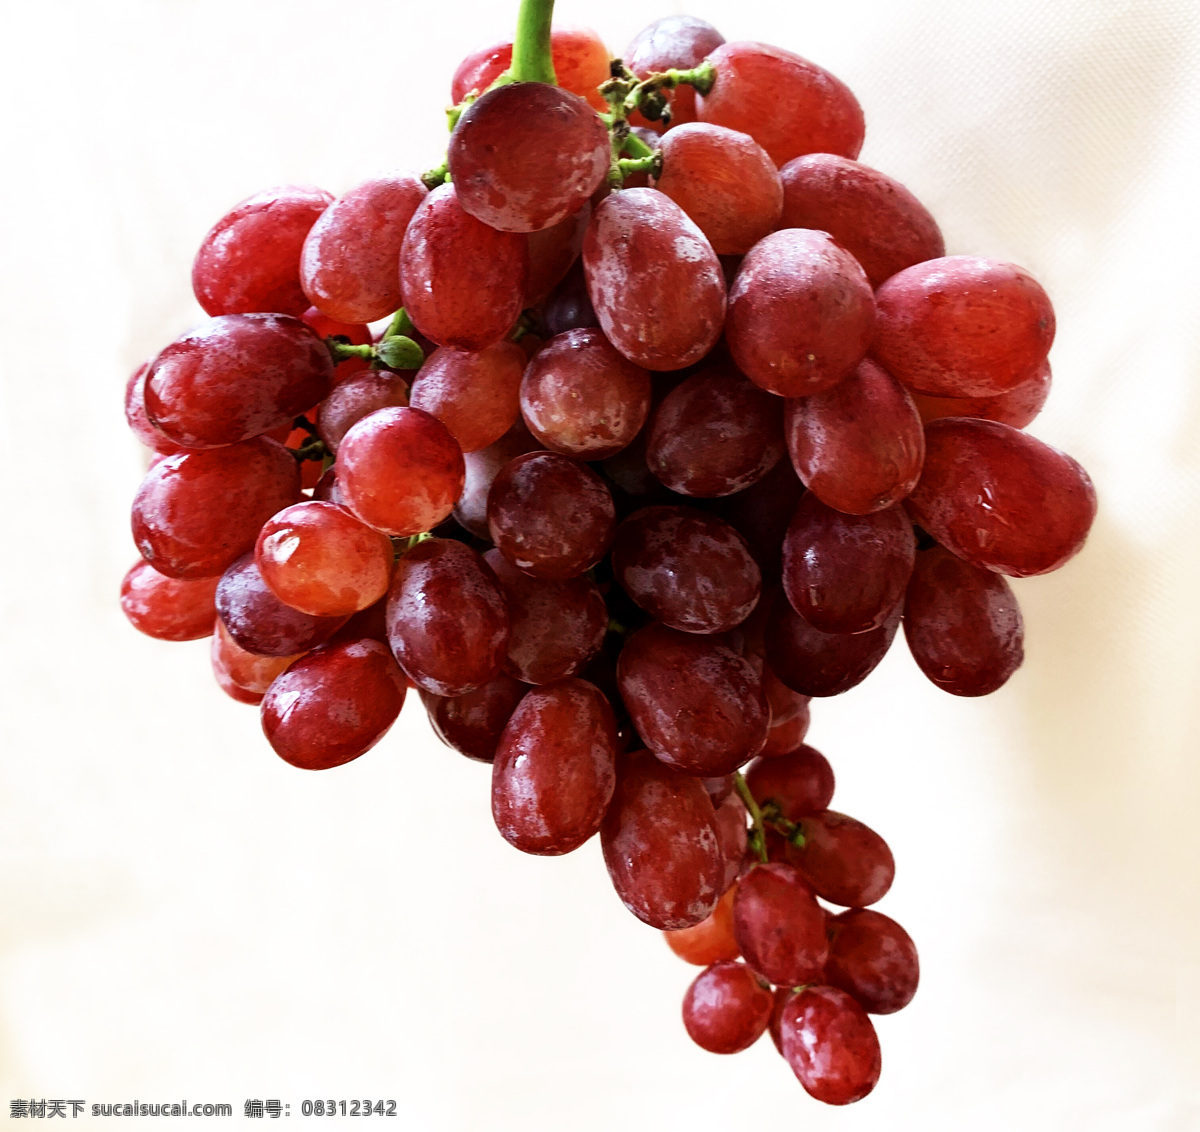 小提子图片 提子 红提子 红提 无籽提子 新鲜提子 新鲜水果 生物世界 水果